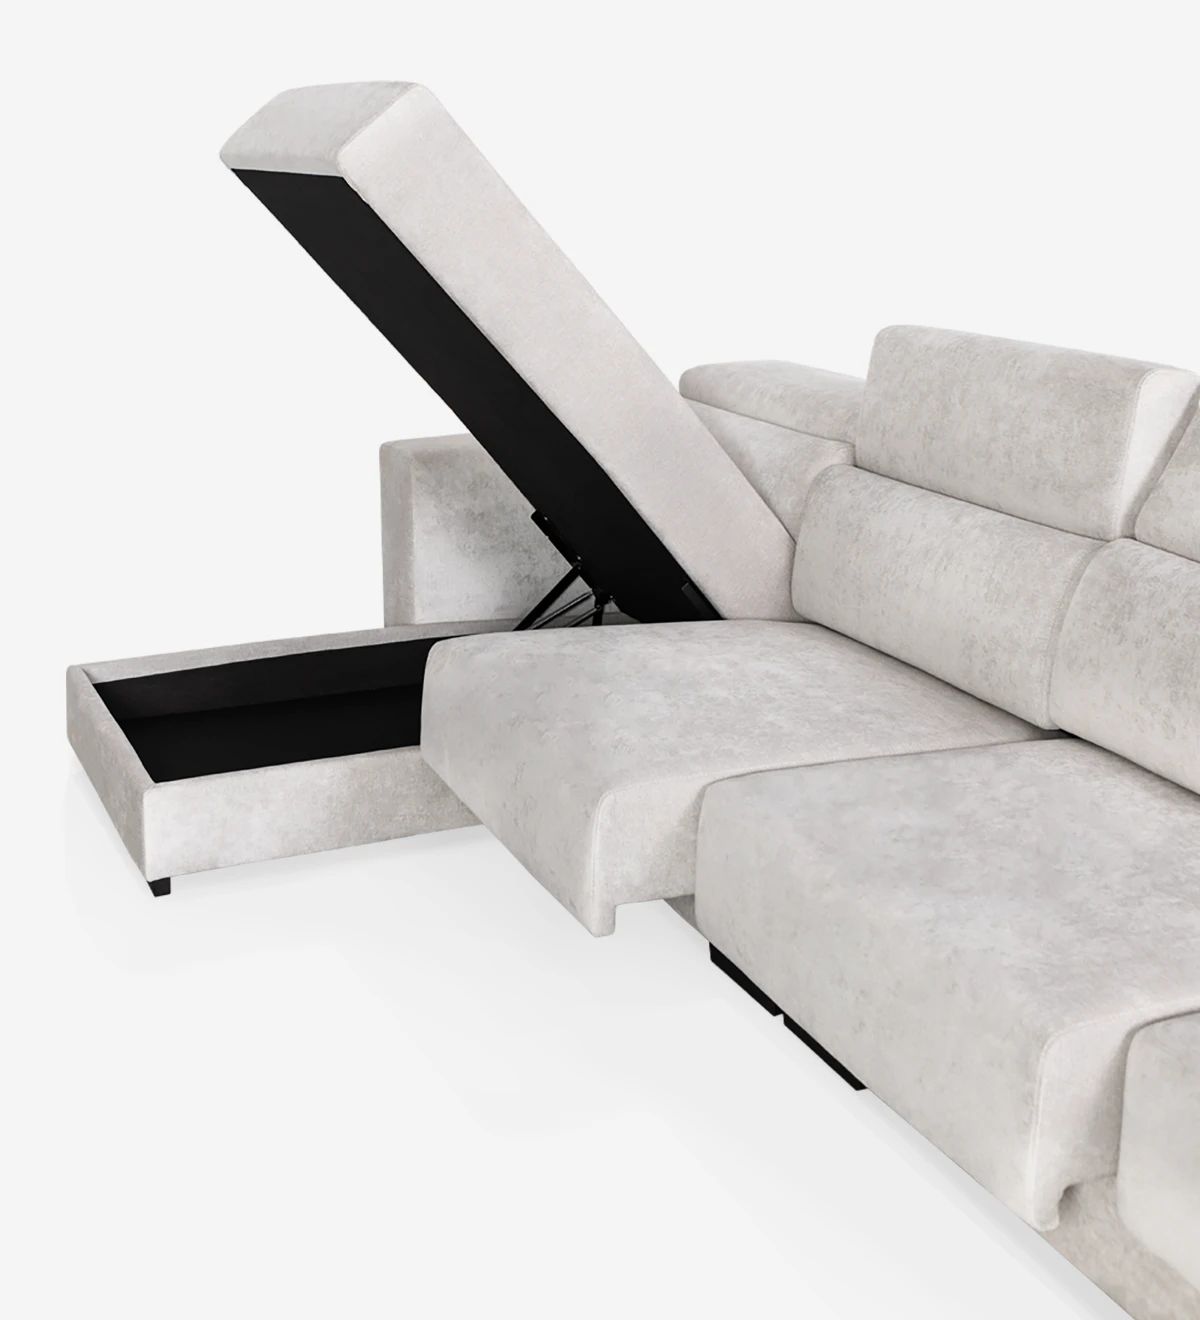 Canapé 3 places avec chaise longue, revêtu de tissu, avec têtières inclinables et sièges coulissants.